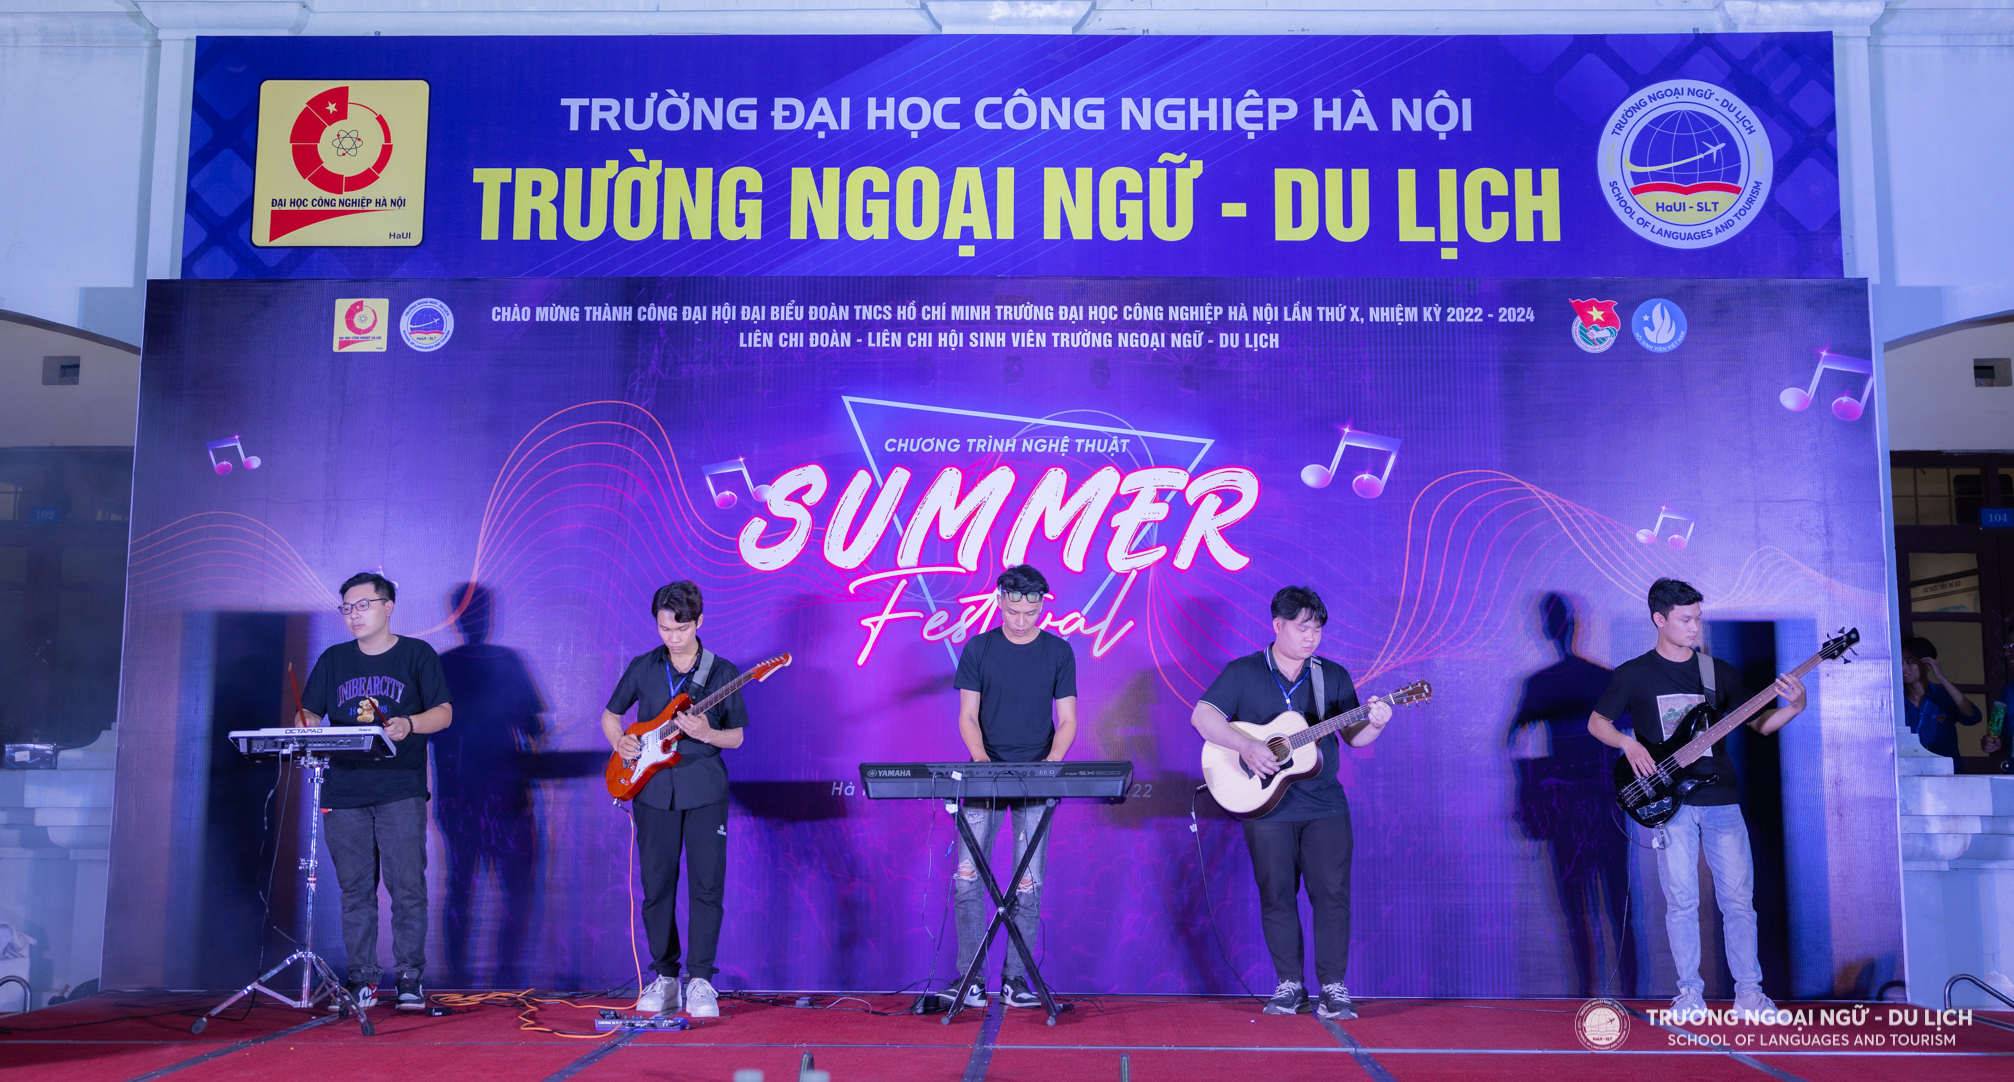 Summer Festival – Bữa tiệc âm nhạc đầy sắc màu